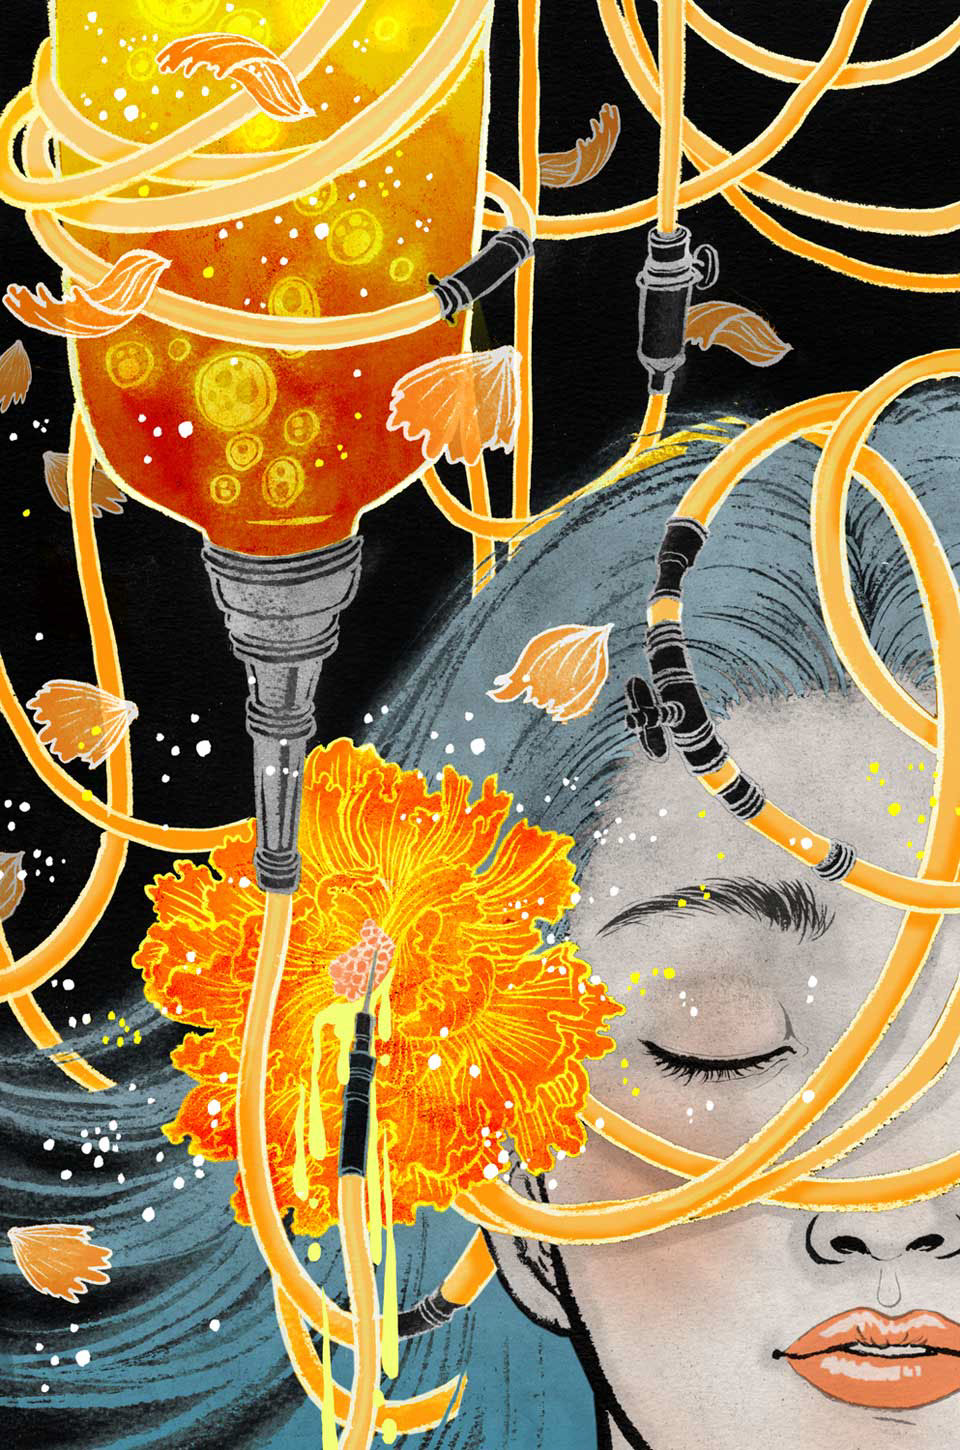 book covers  science fiction  girls  Japan  Asia  DC comics  vertigo book design